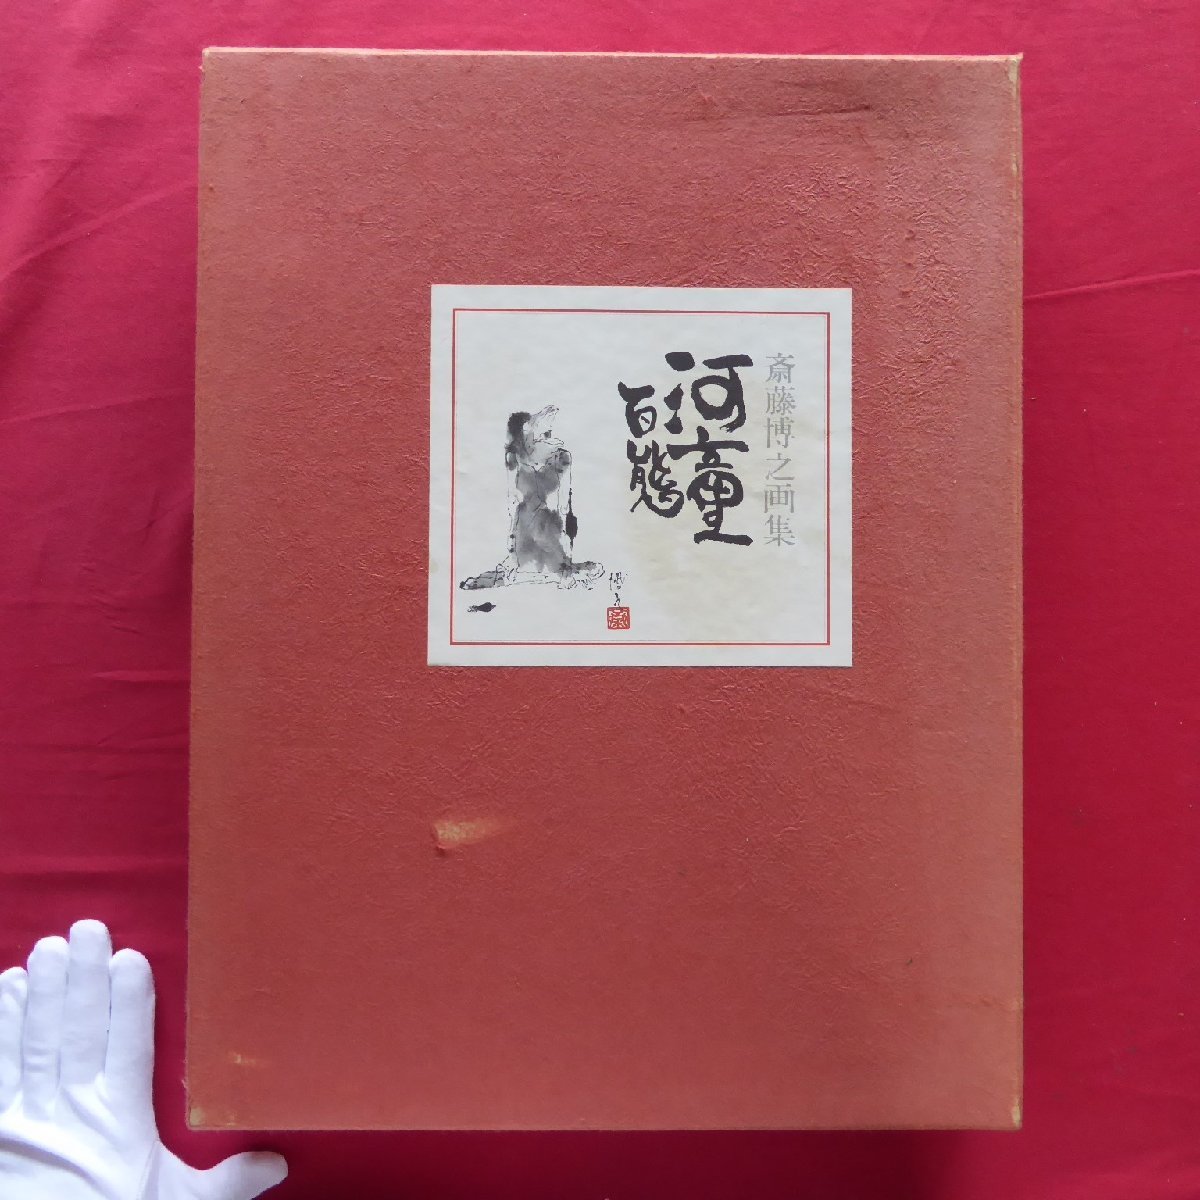 Grand m [Saito Hiroyuki Art Collection - Kappa sous toutes ses formes / Limité à 30 exemplaires, N° 13/12 planches/1 dessin original à l'encre/1973, Iwasaki Shoten】, Peinture, Livre d'art, Collection, Livre d'art